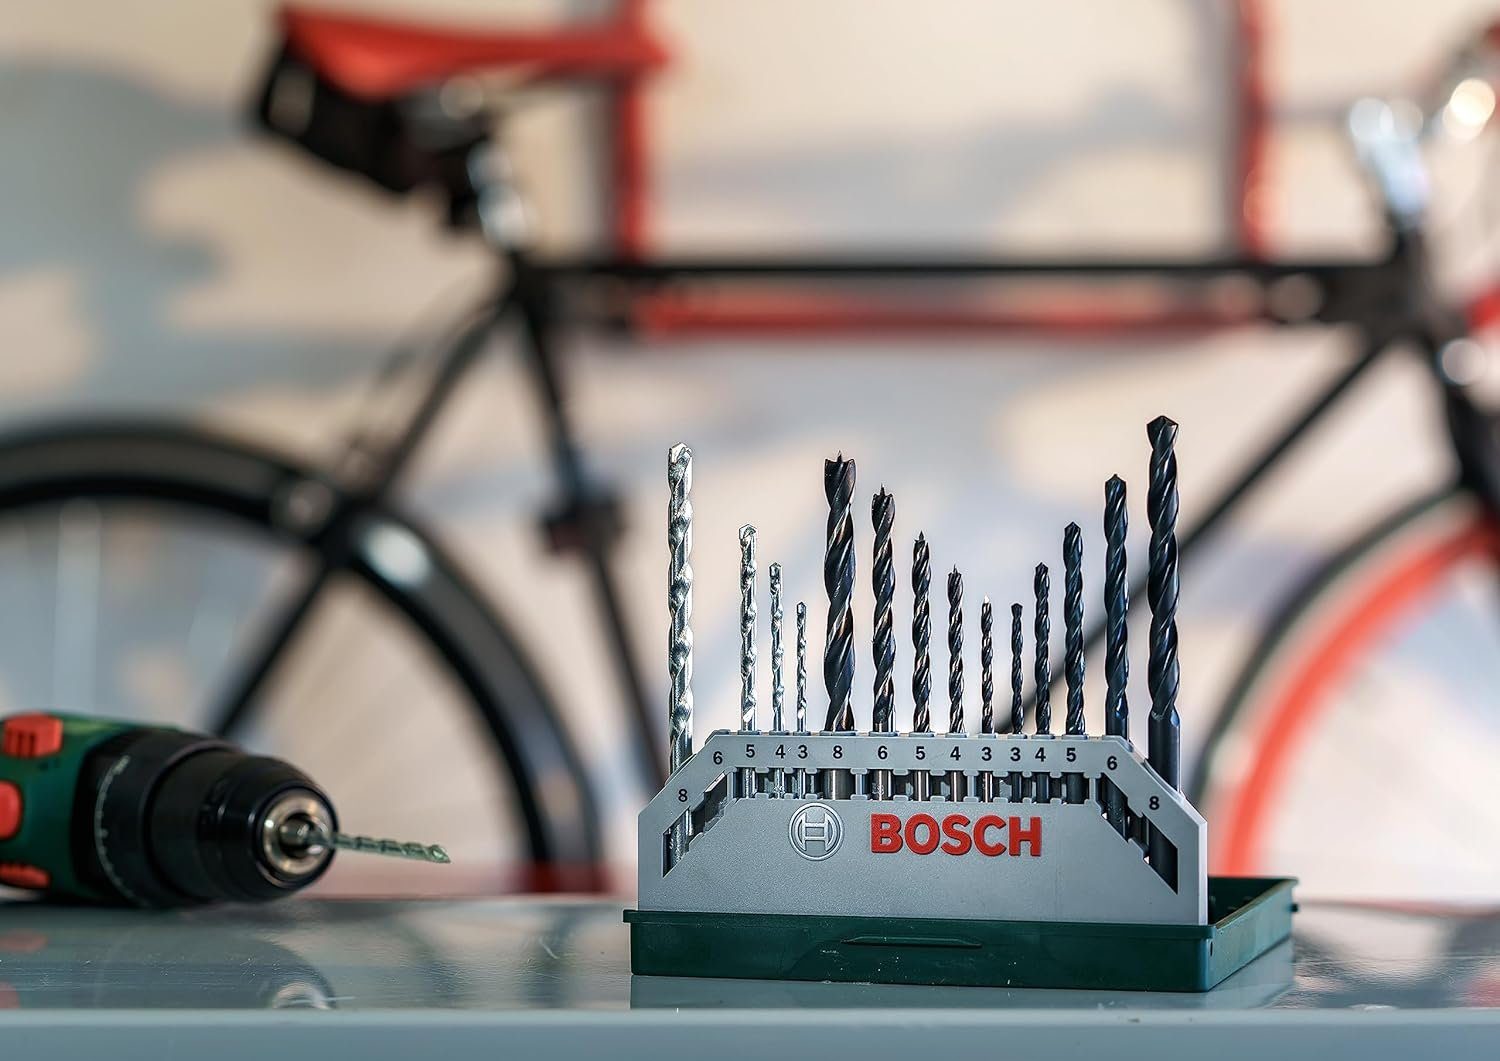 BOSCH Bohrer- Mixed-Set und Mini-X-Line und Spiralbohrer Stein Bitset Bosch Metal 15tlg. (Holz